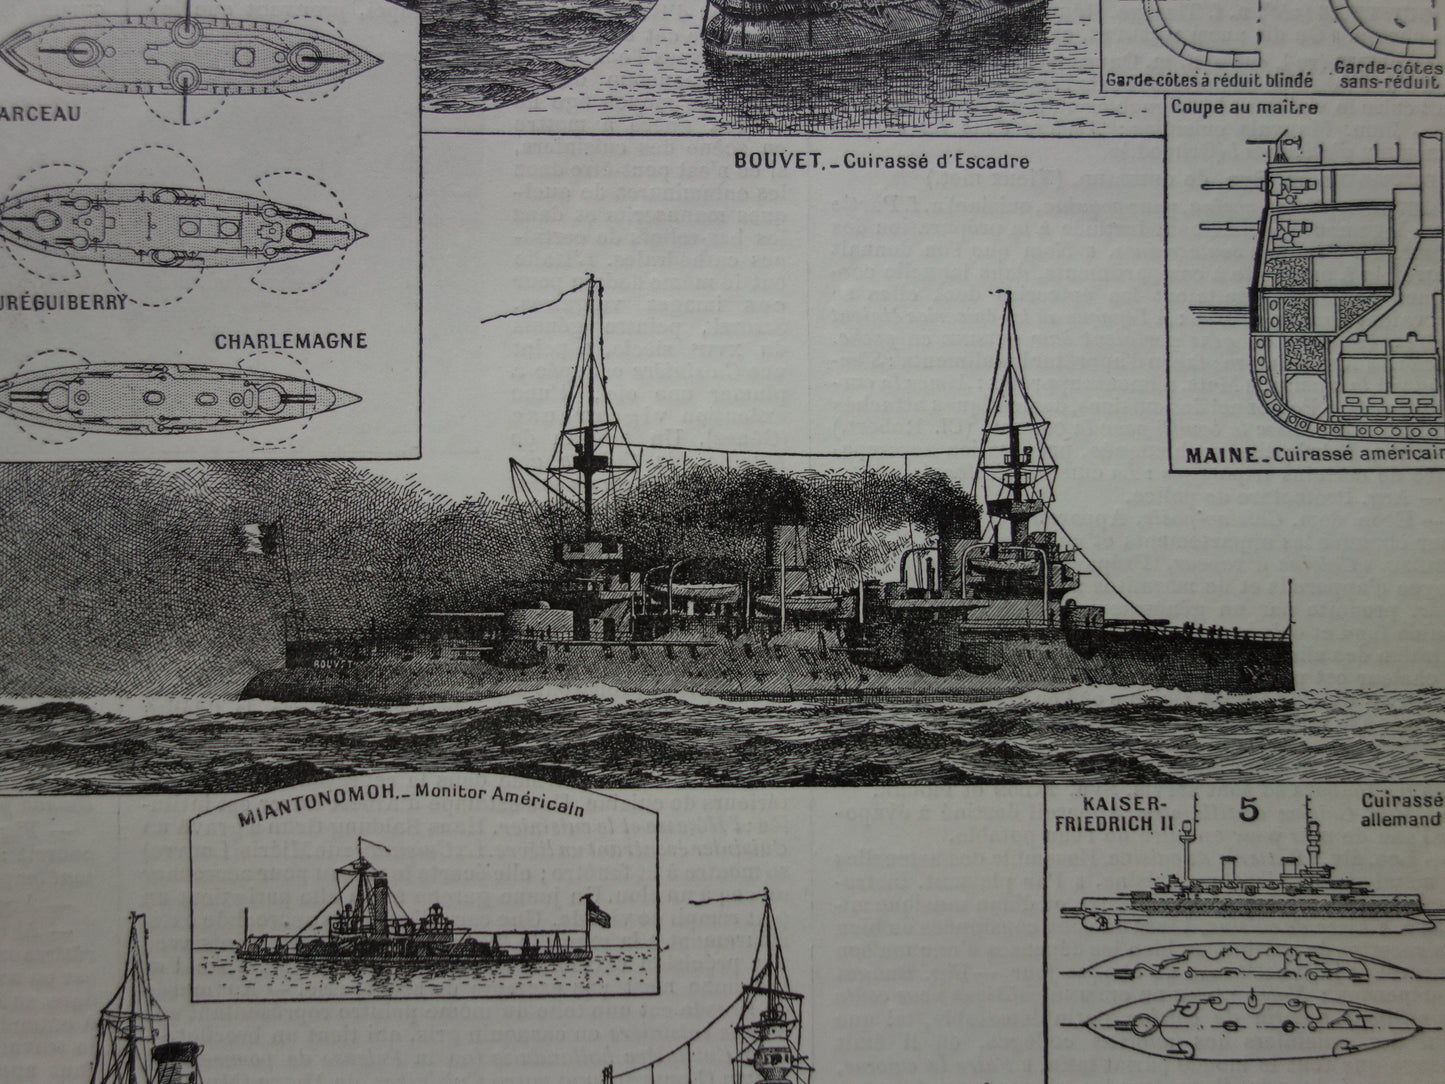 OORLOGSSCHEPEN oude print set van twee antieke Franse prenten over Kruisers Oorlogsschip Slagship Ironclad illustratie vintage prenten